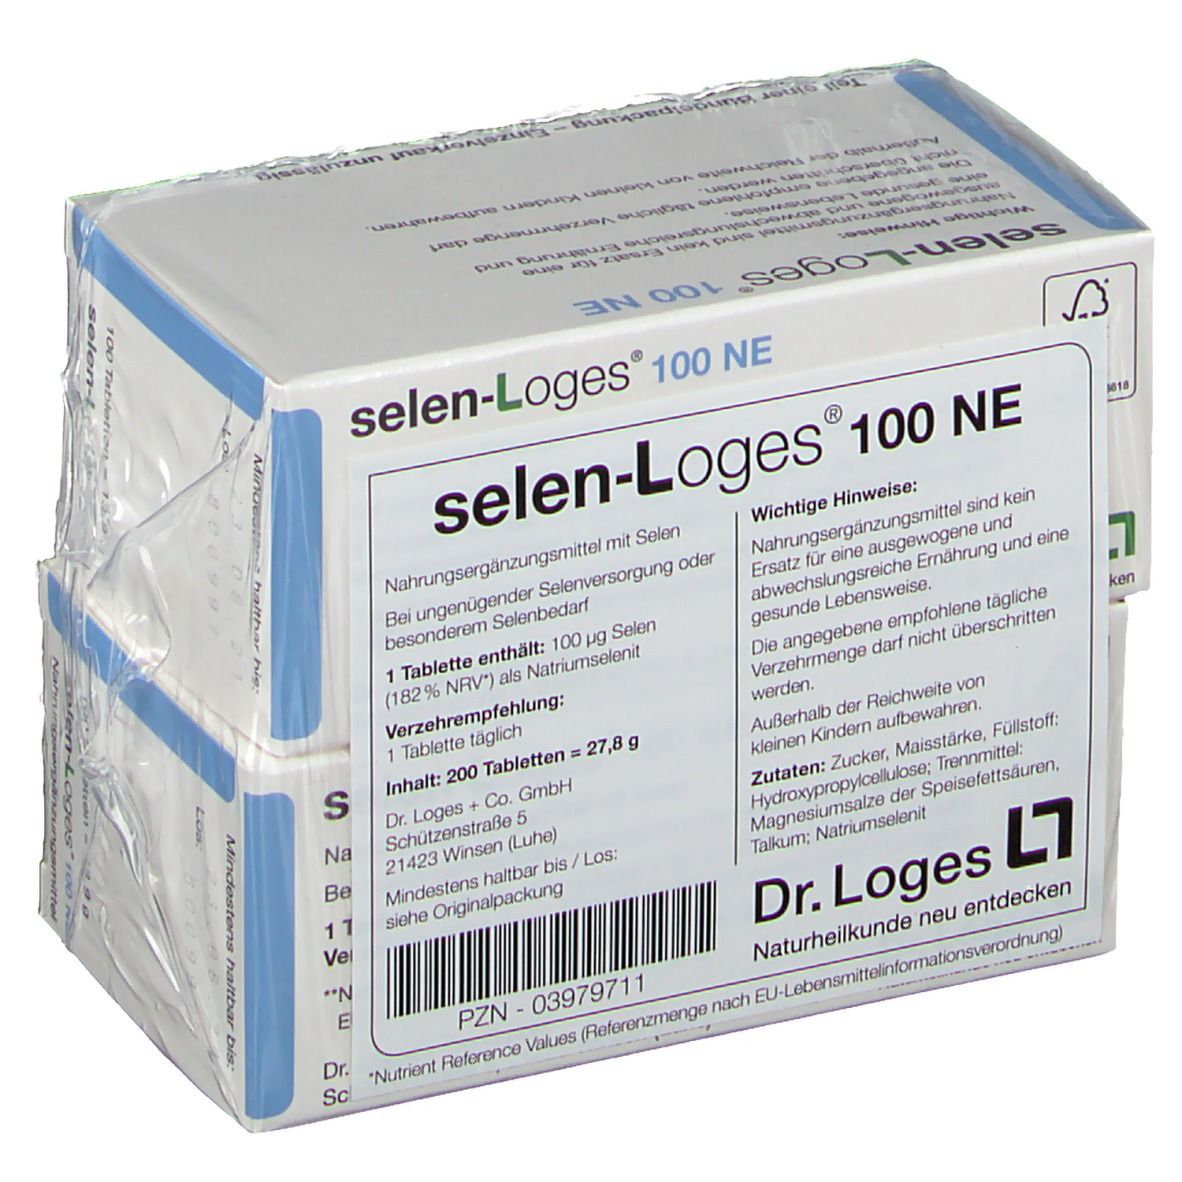 selen-Loges® 100 NE Tabletten